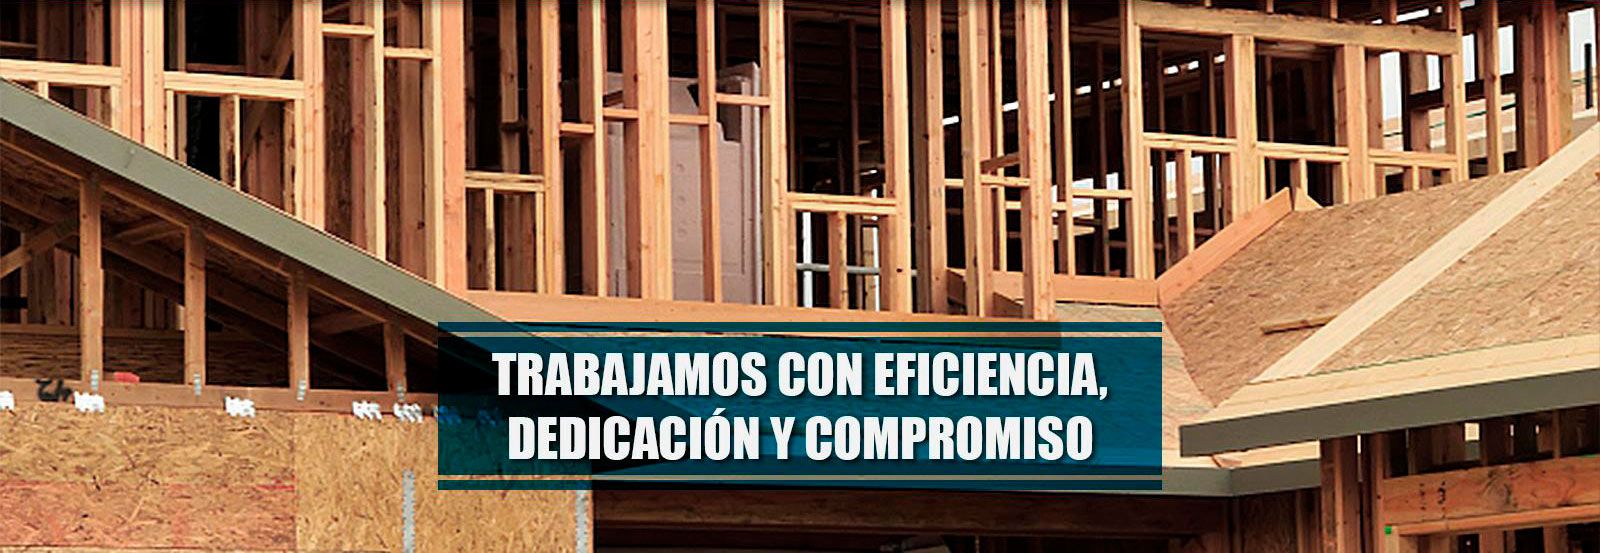 Construcciones José González Corada banner1